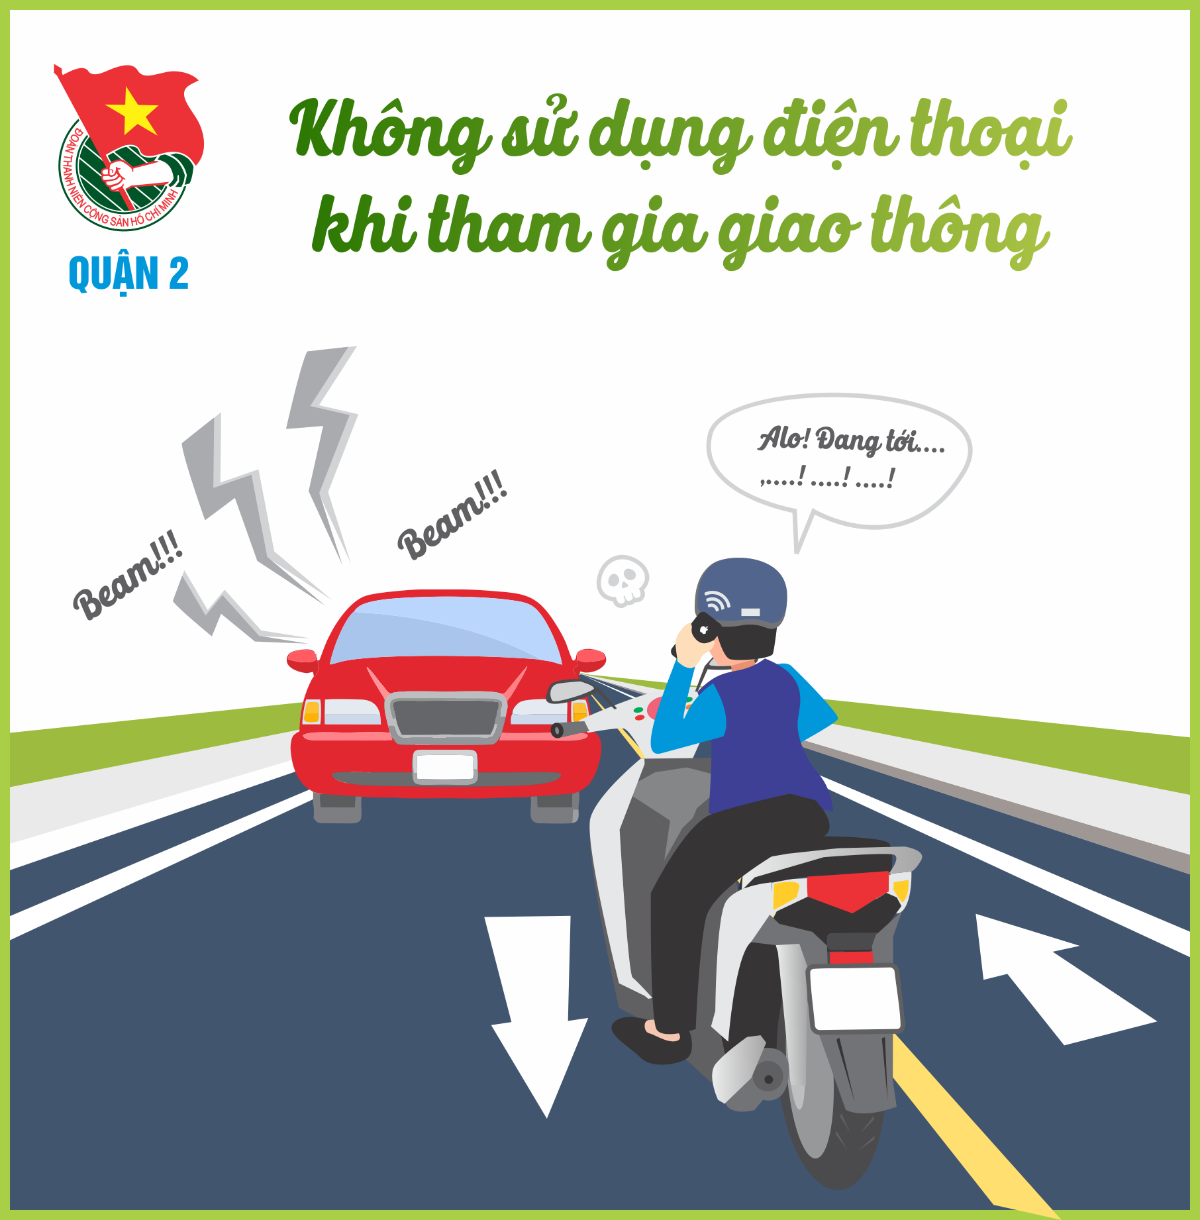 Hình ảnh bảo vệ ô tô không sử dụng điện thoại di động khi tham gia giao thông trên đường